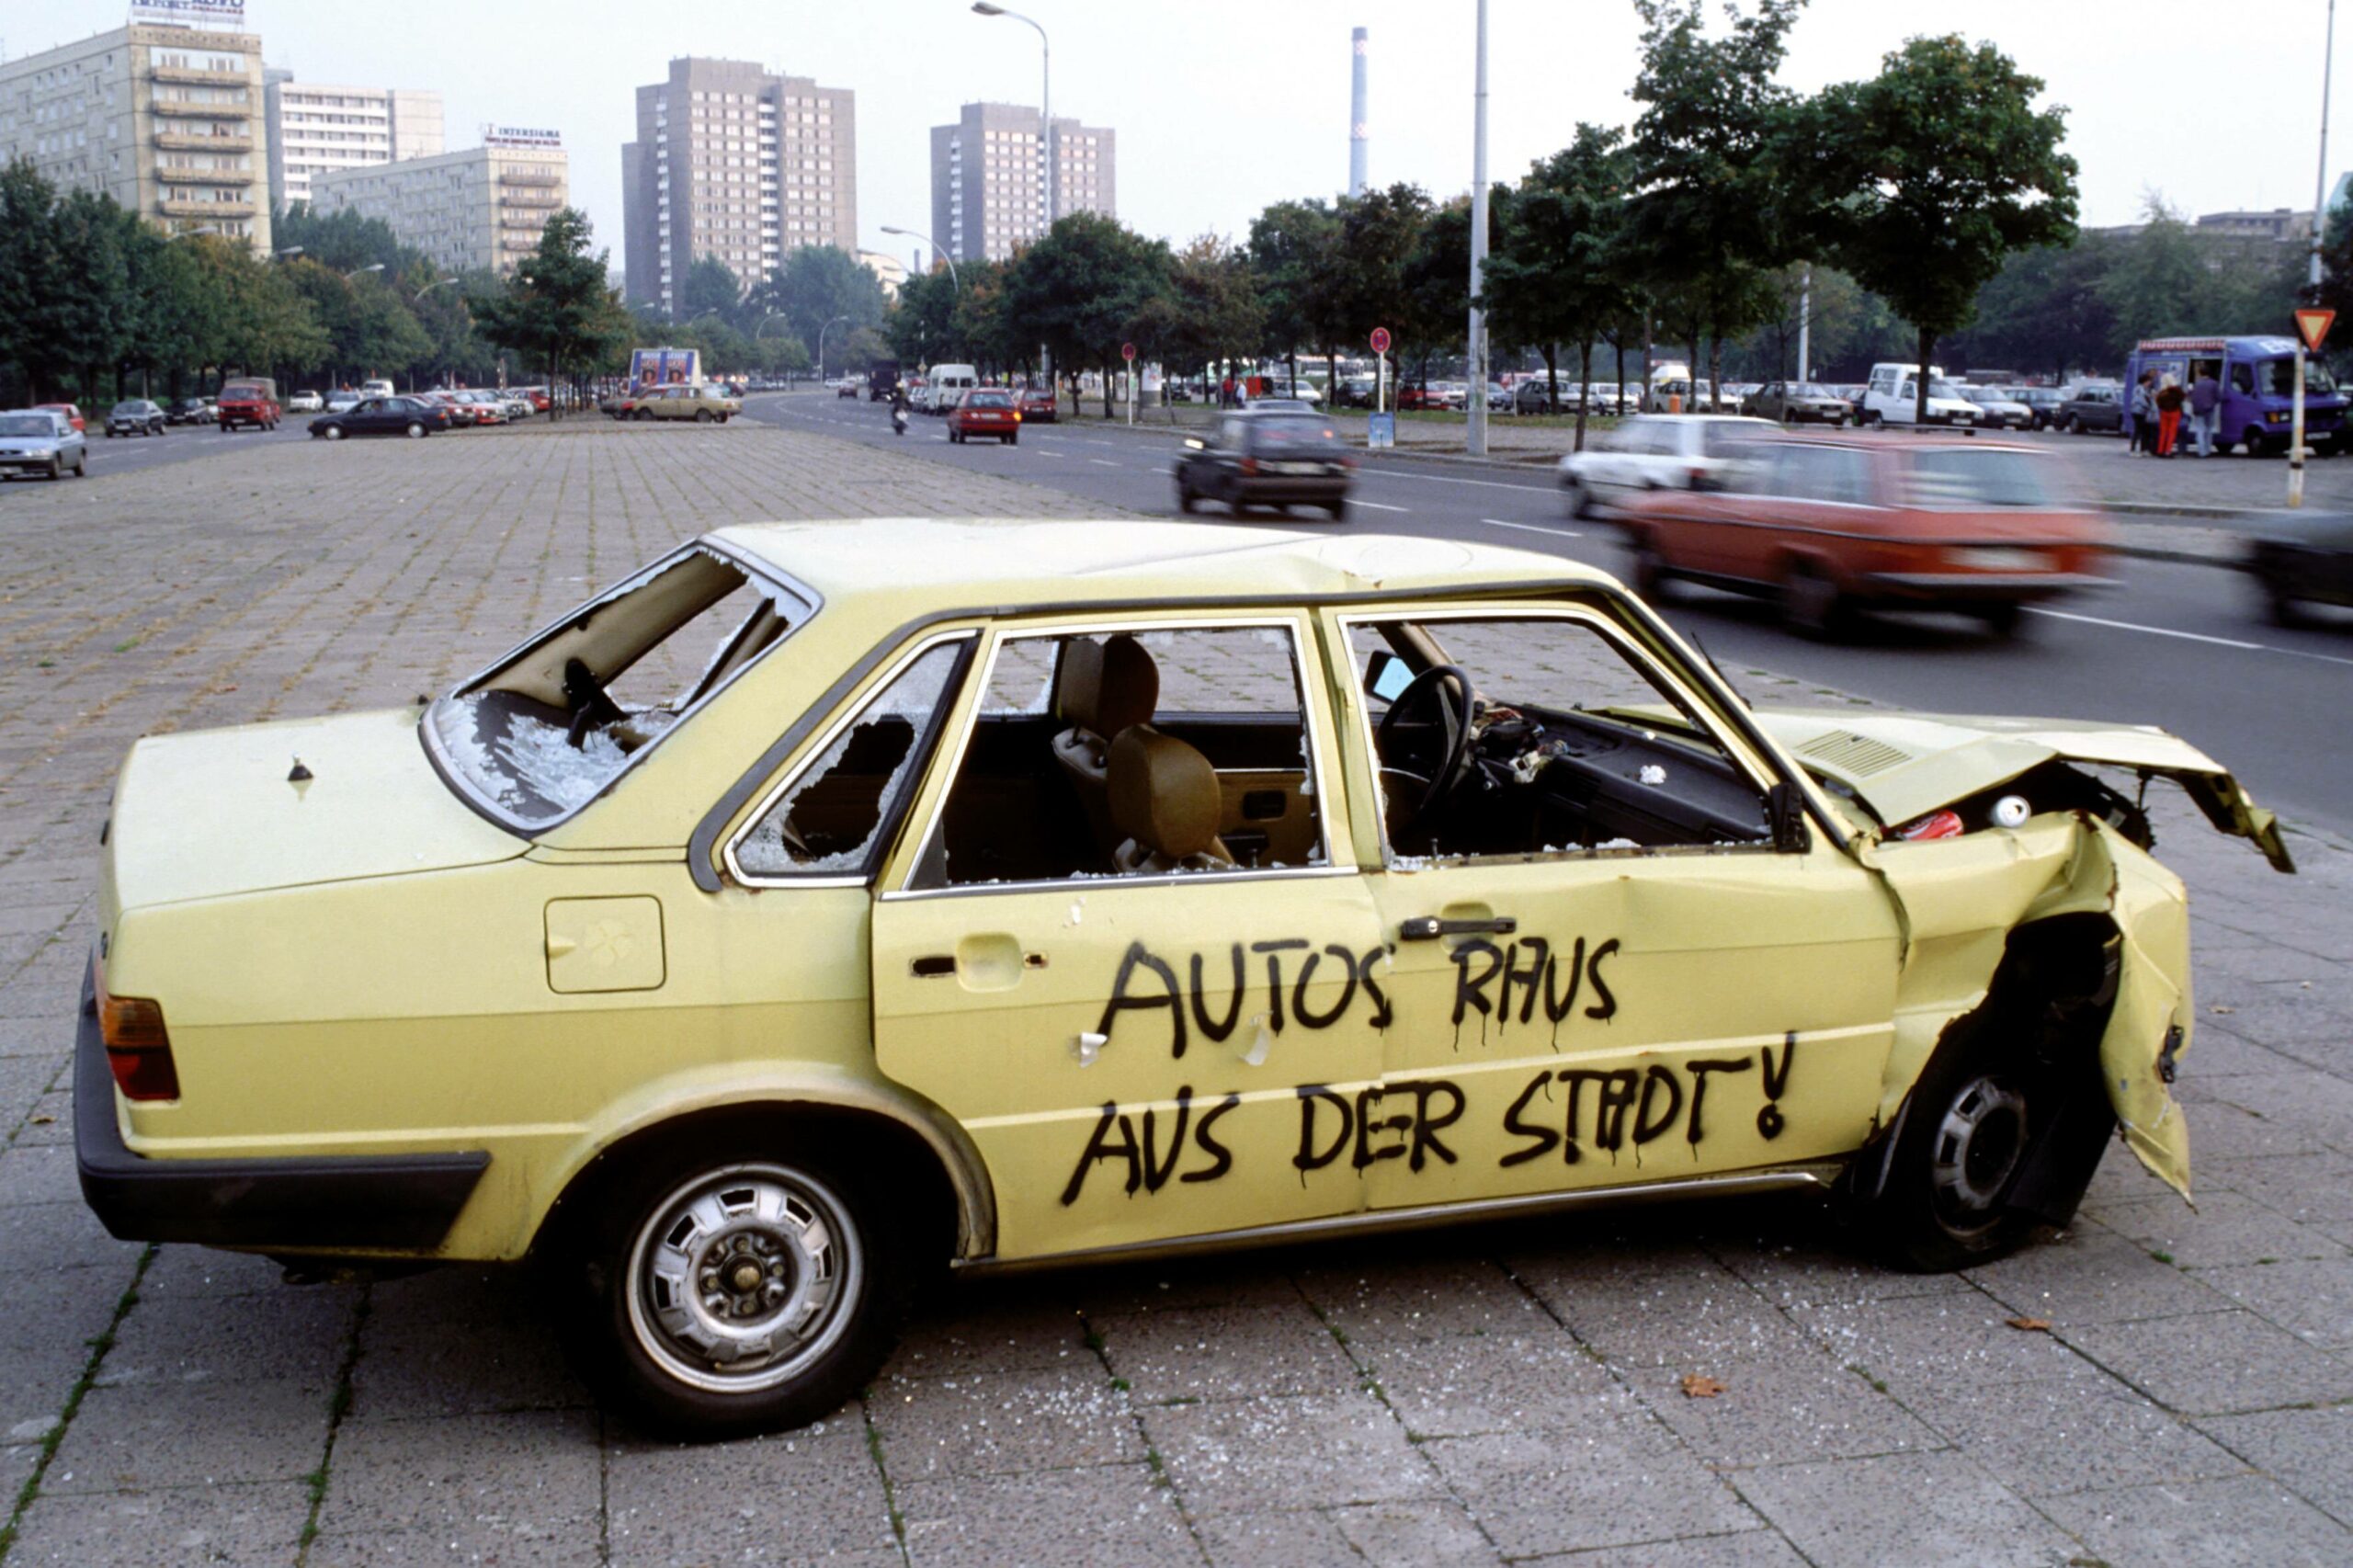 Autos raus aus der Stadt! Berlin, 1993. Foto: Imago/Harald Almonat